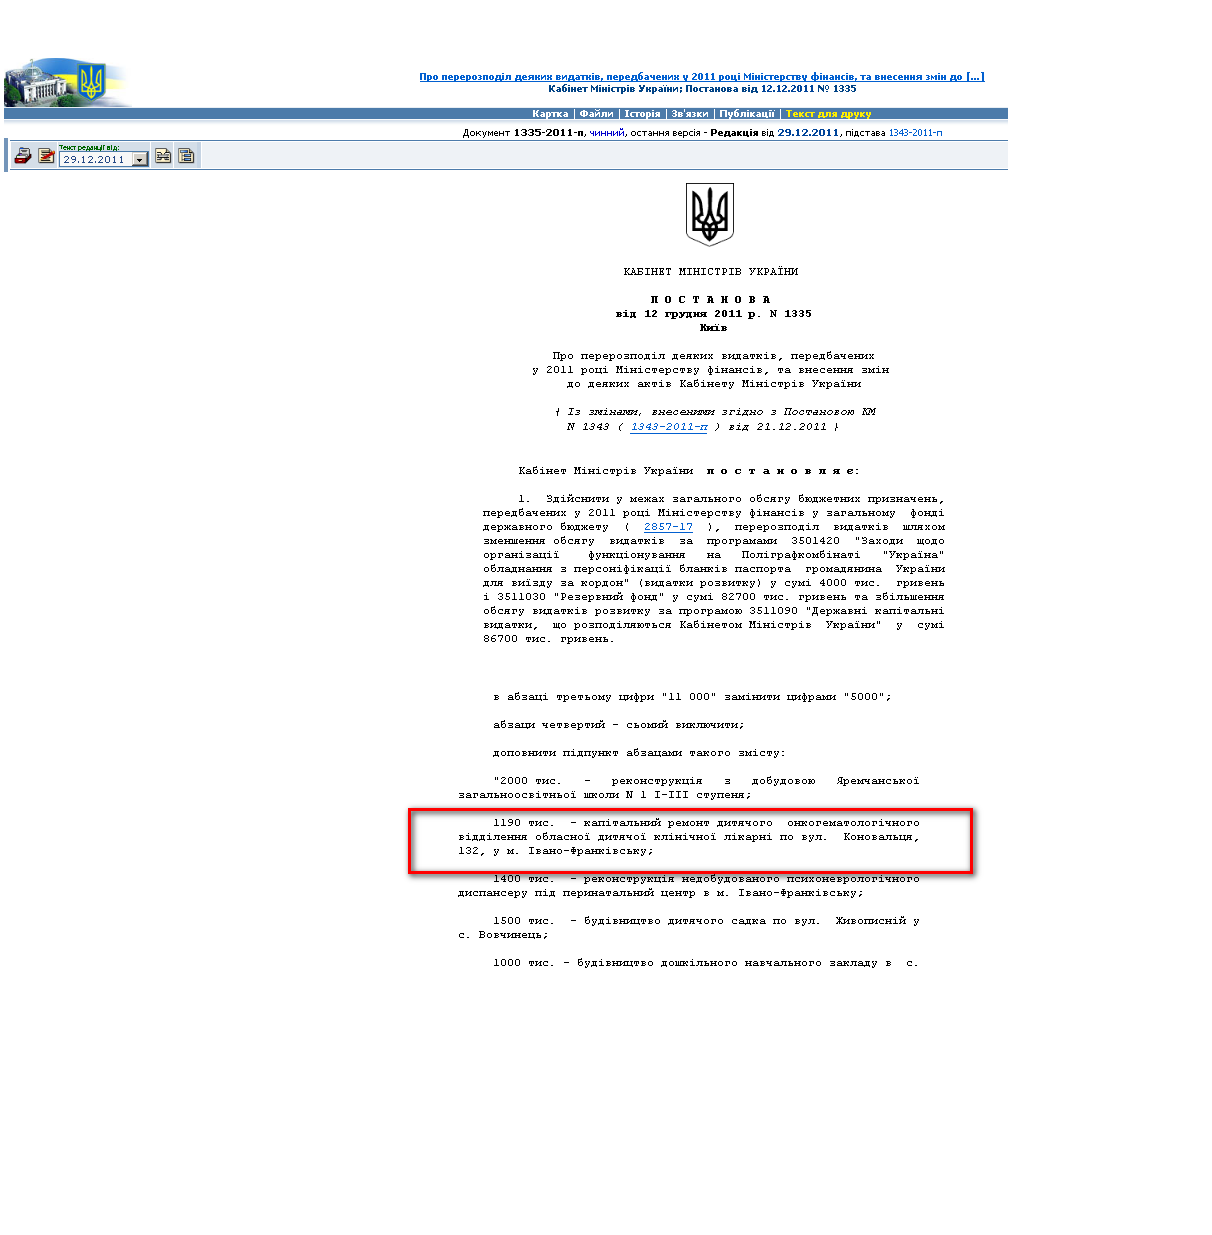 http://zakon2.rada.gov.ua/laws/show/1335-2011-%D0%BF